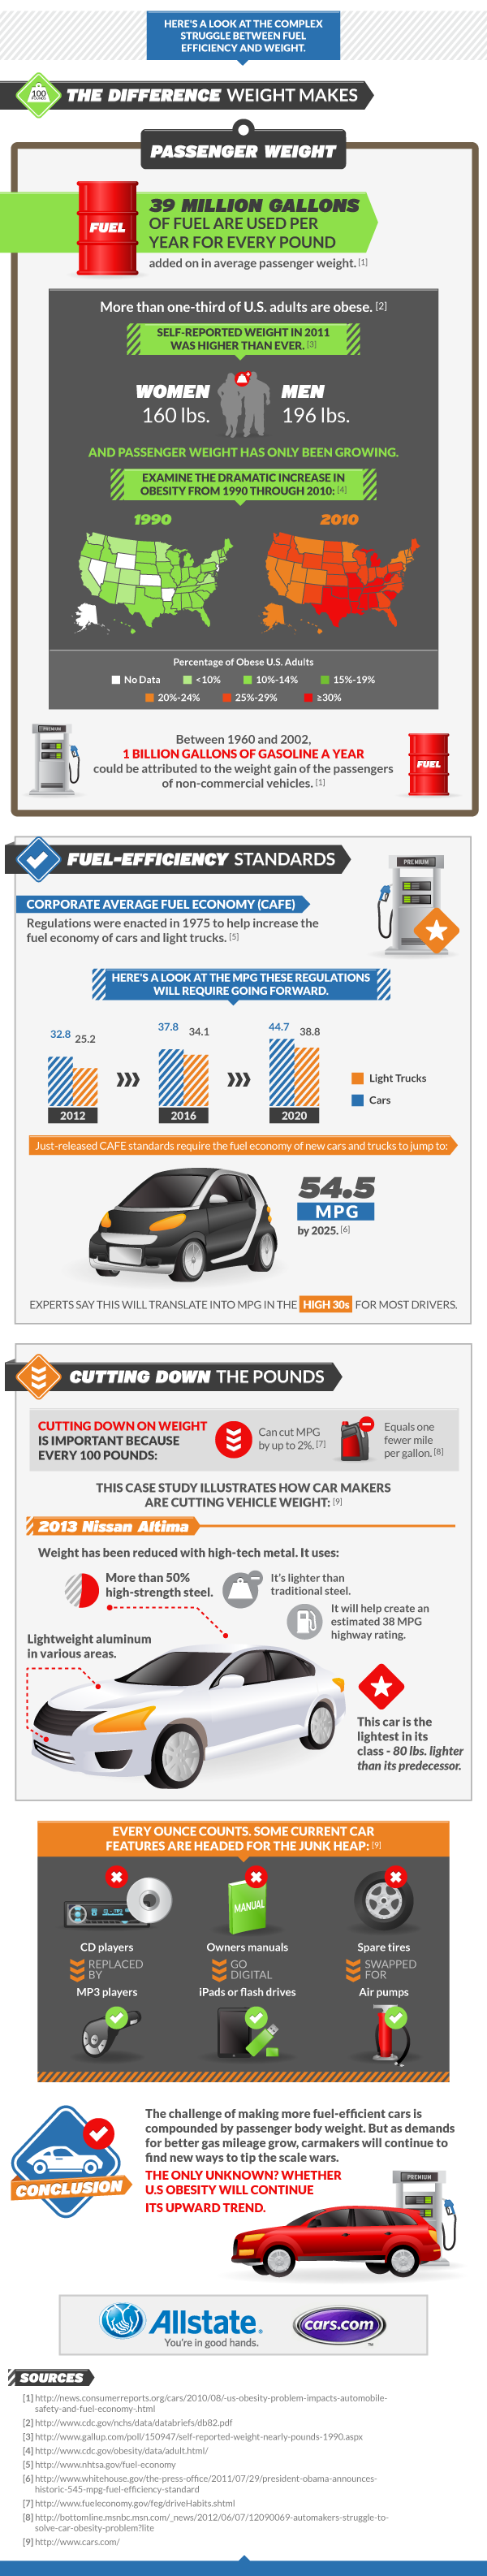 Obesity and Fuel Economy